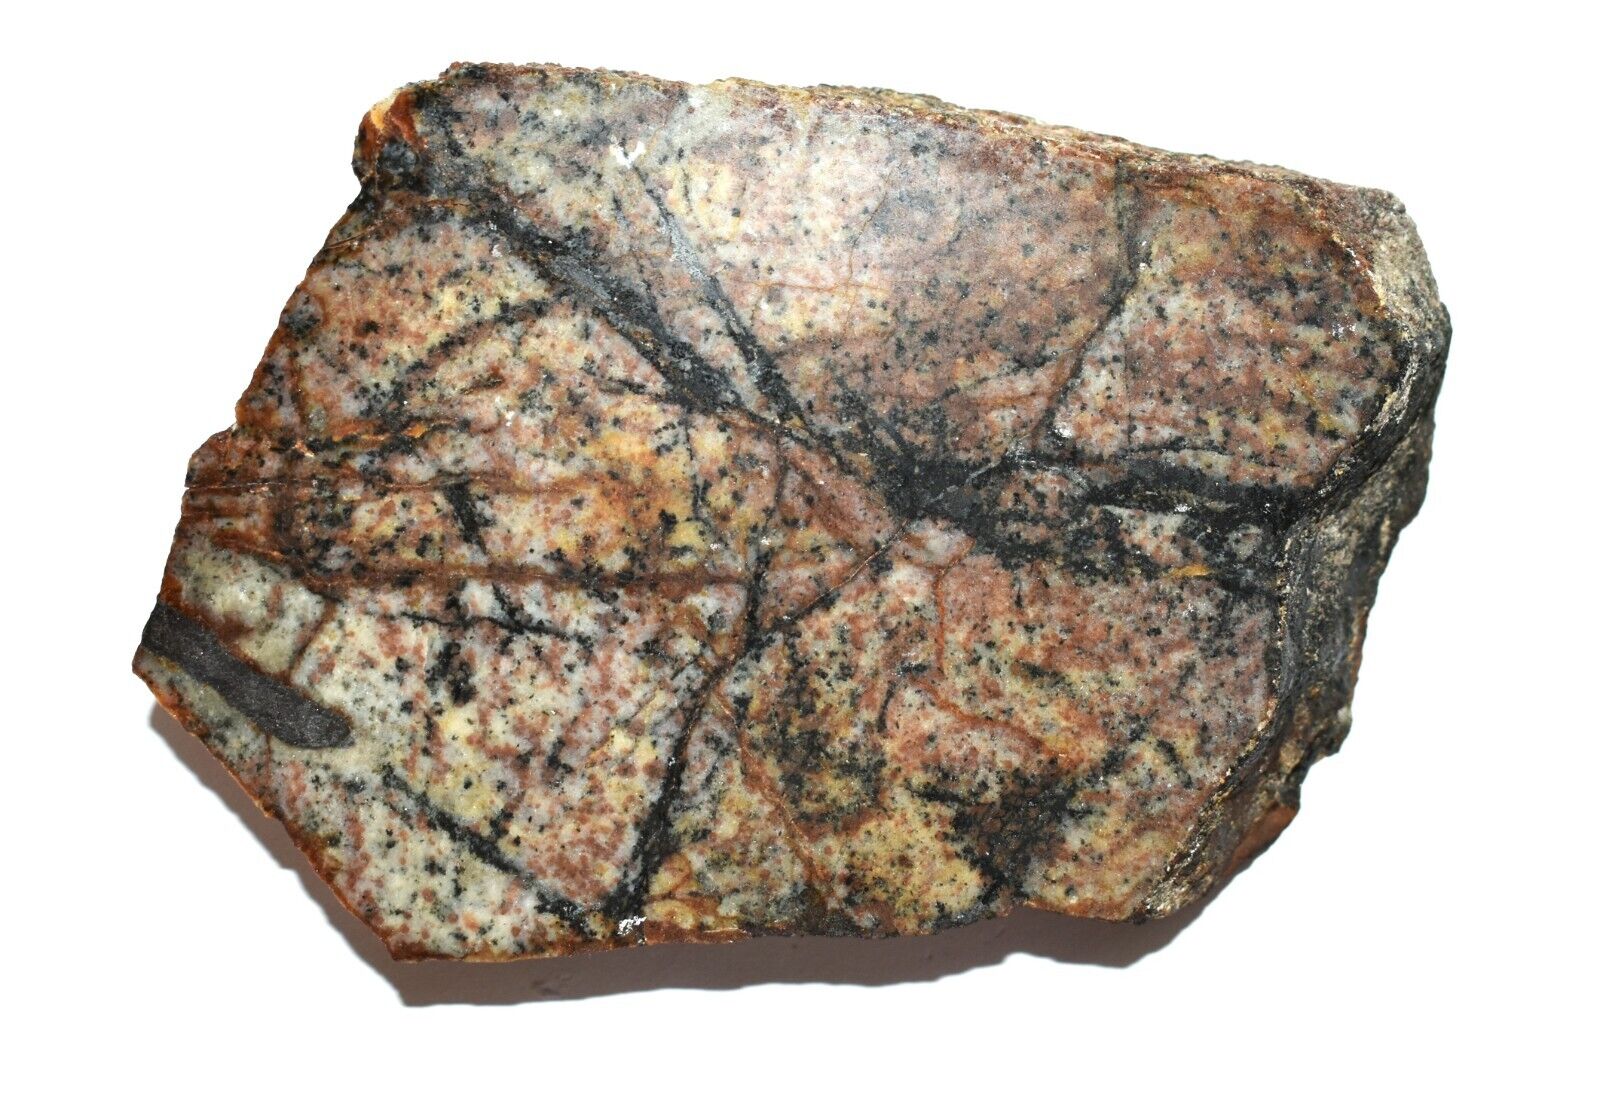 Silver Ore Dendritic Crystal 1800s Ore Knob Copper Mine North Carolina 1.5Lb.